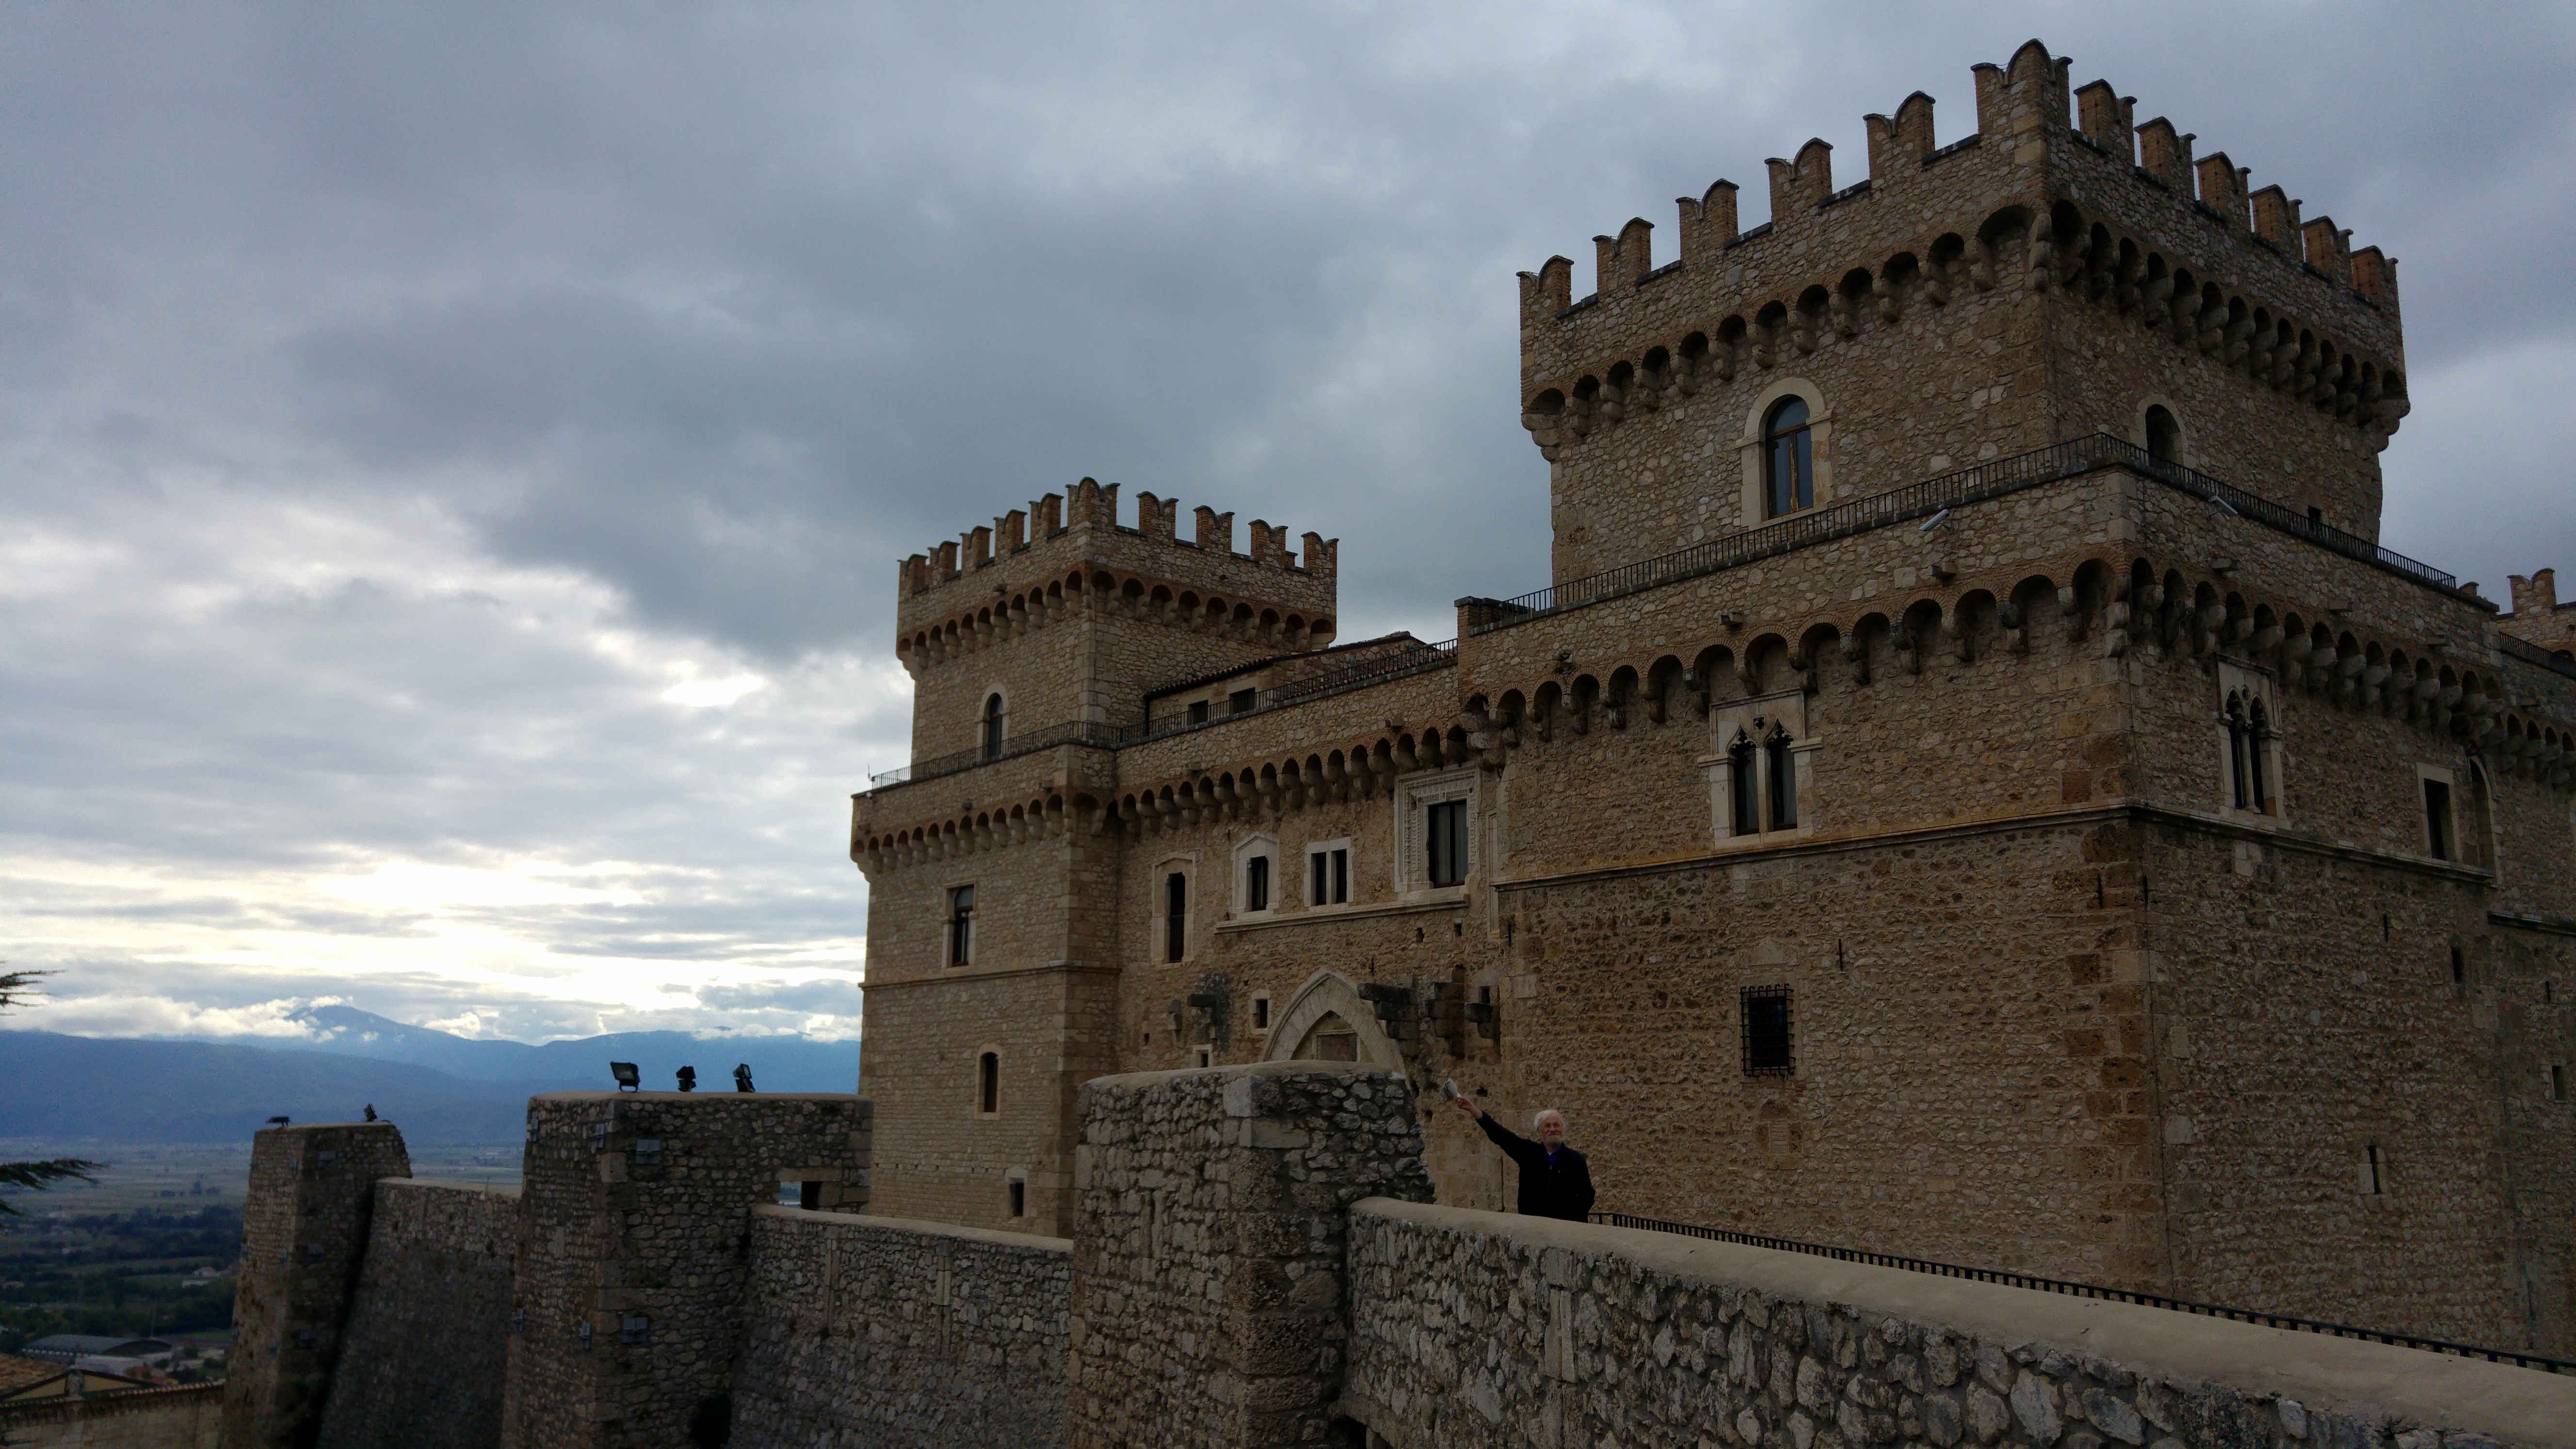 Celano Castello Piccolomini : Abruzzo Italy | Visions of Travel